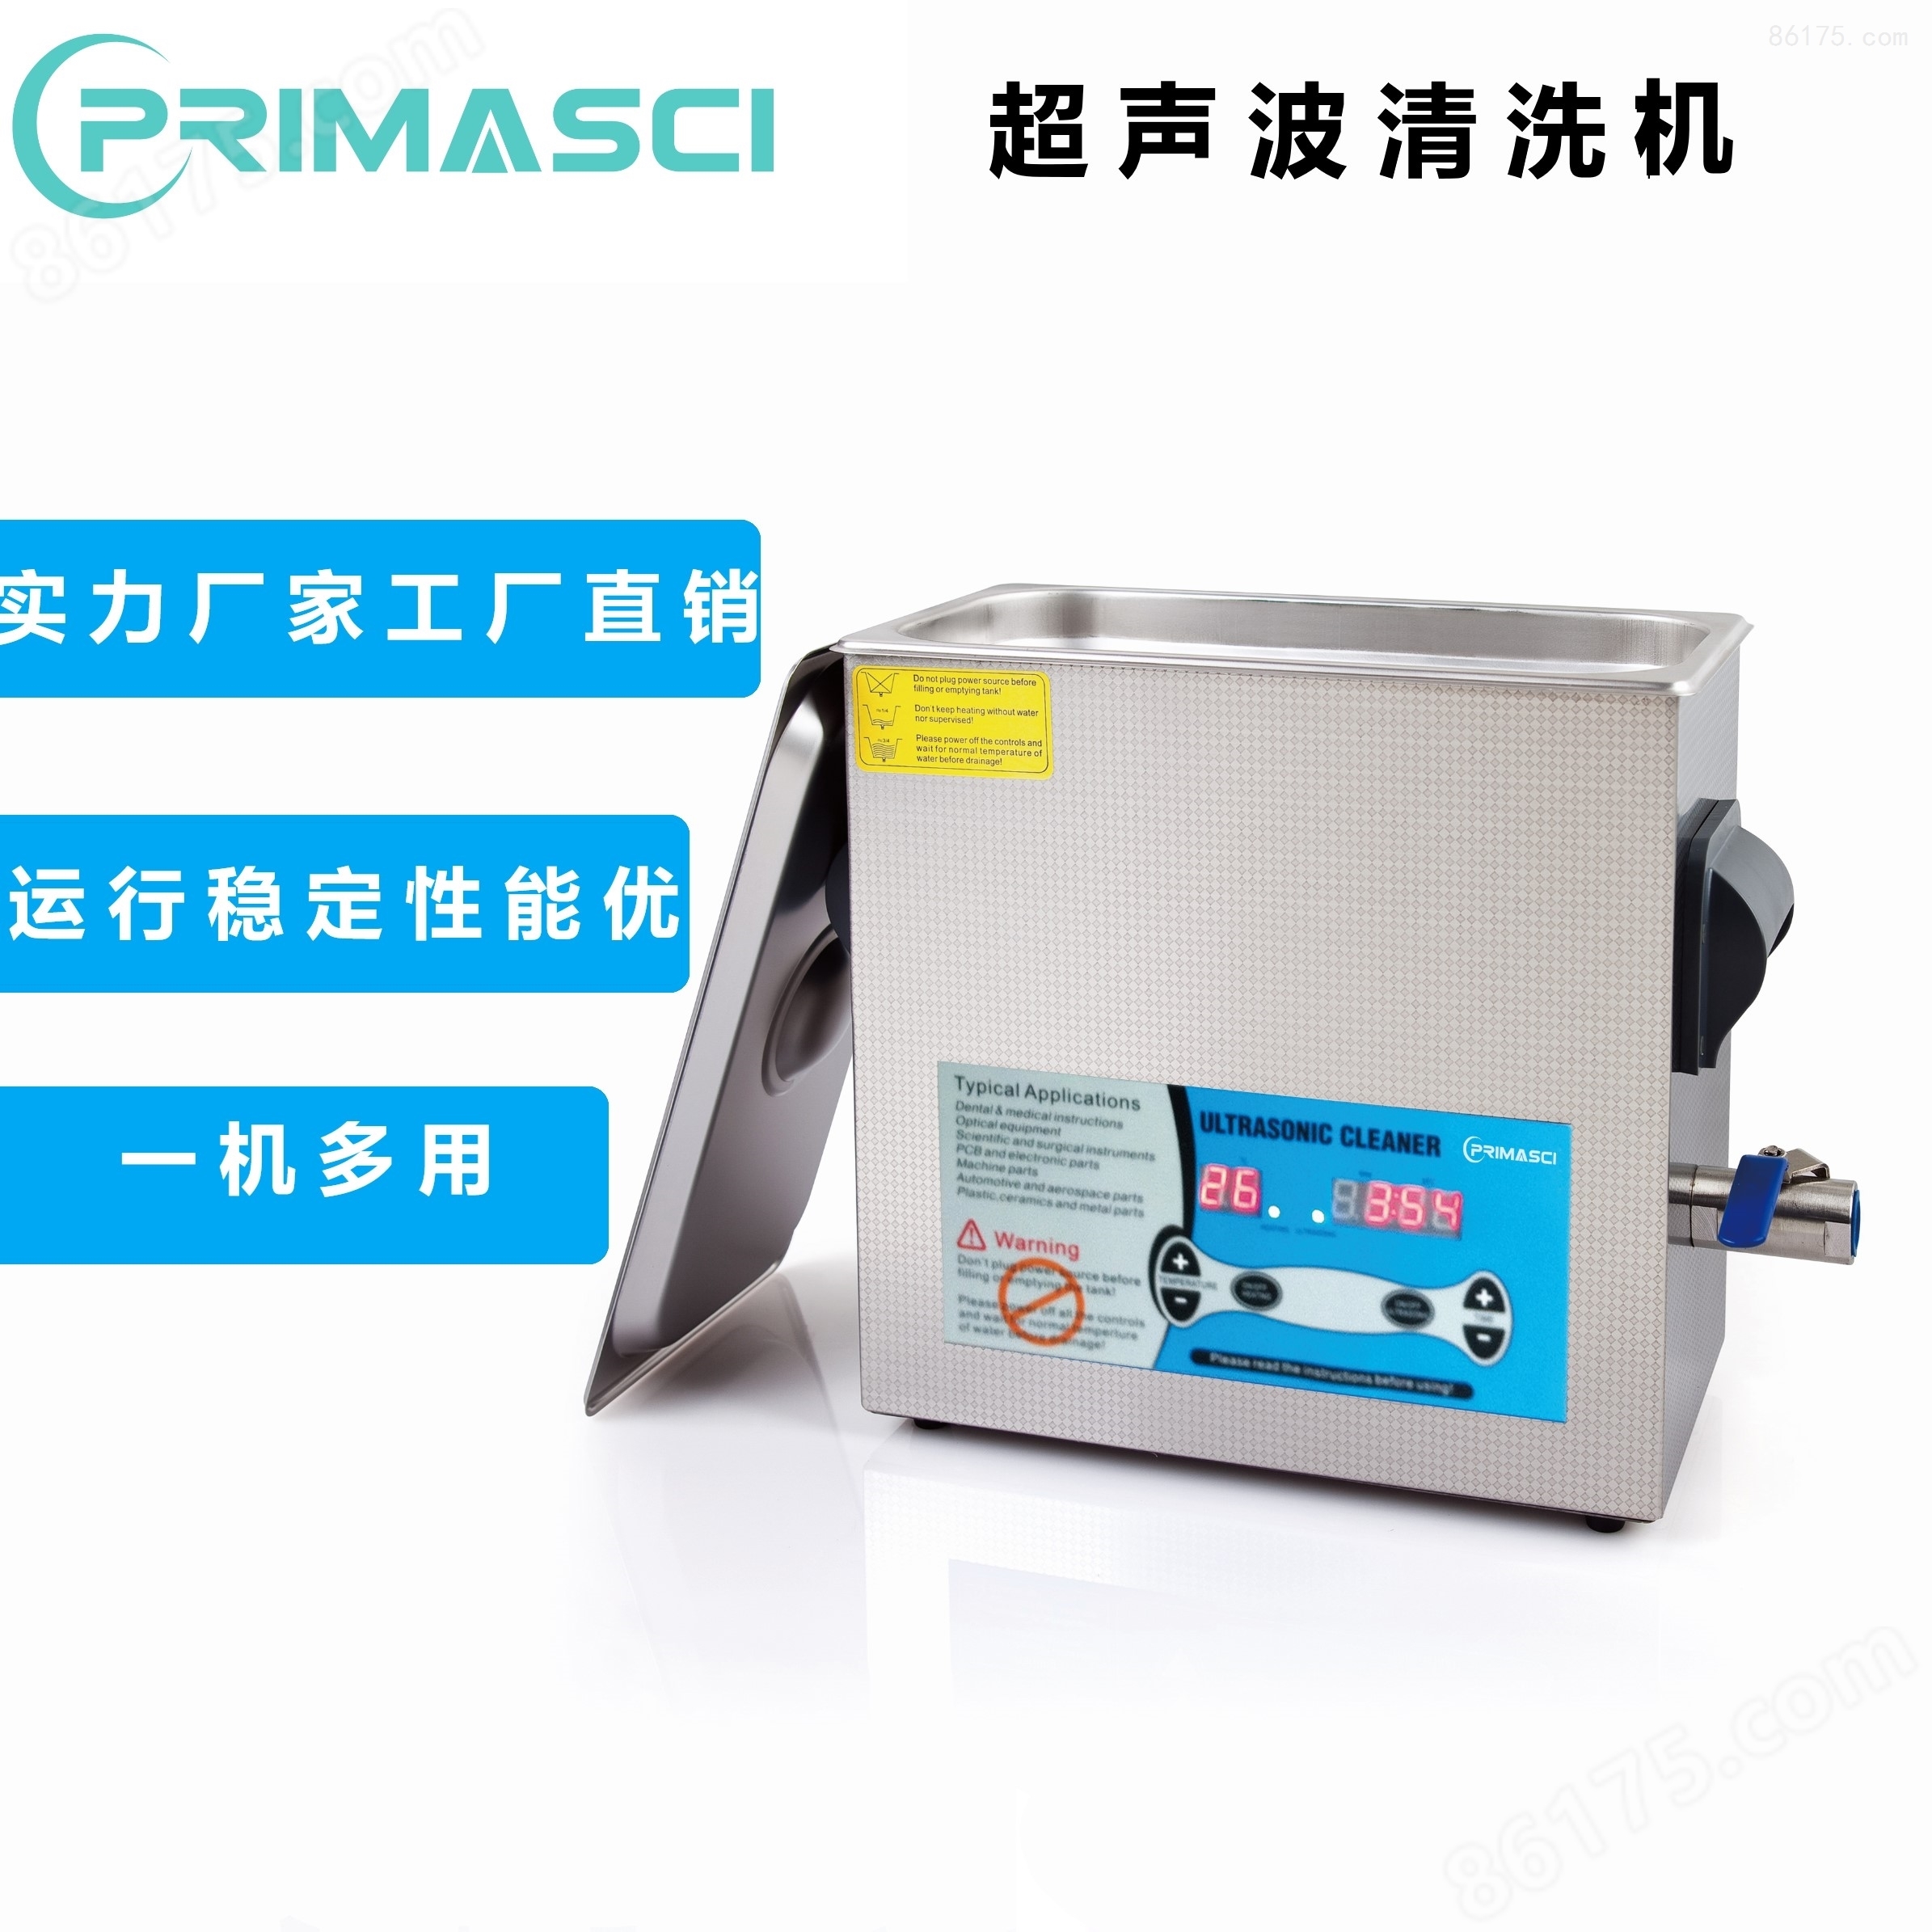 自动单槽式超声波清洗器英国PRIMASCI